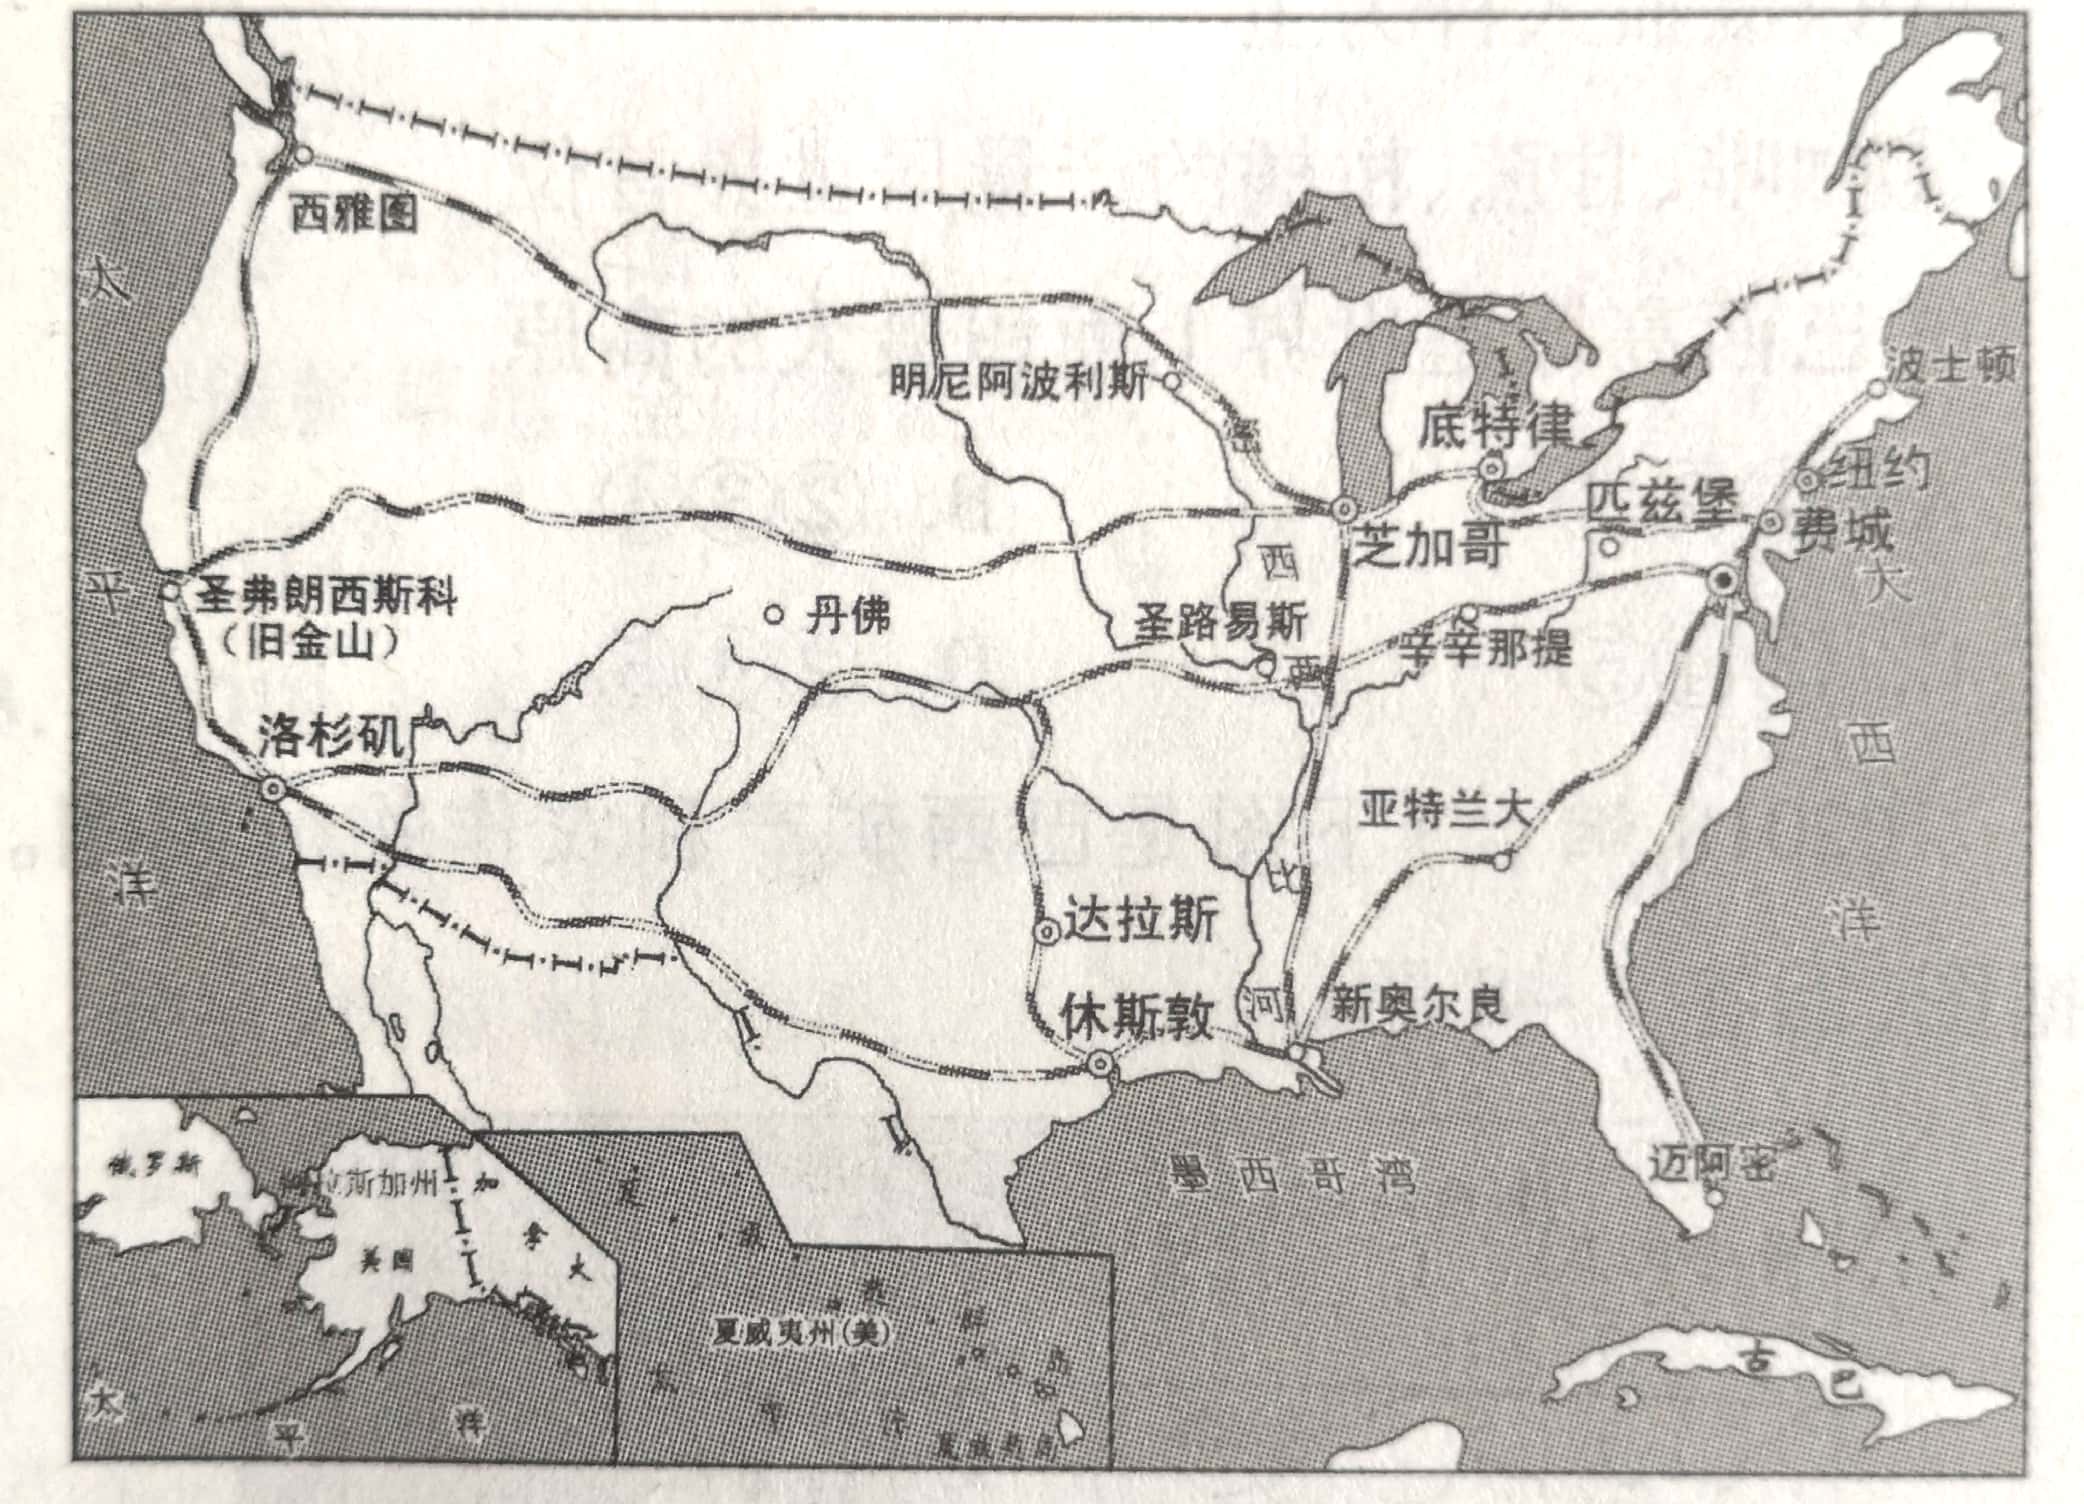 第九章 西半球的国家 /  试题详情读下图"美国铁路干线分布图".